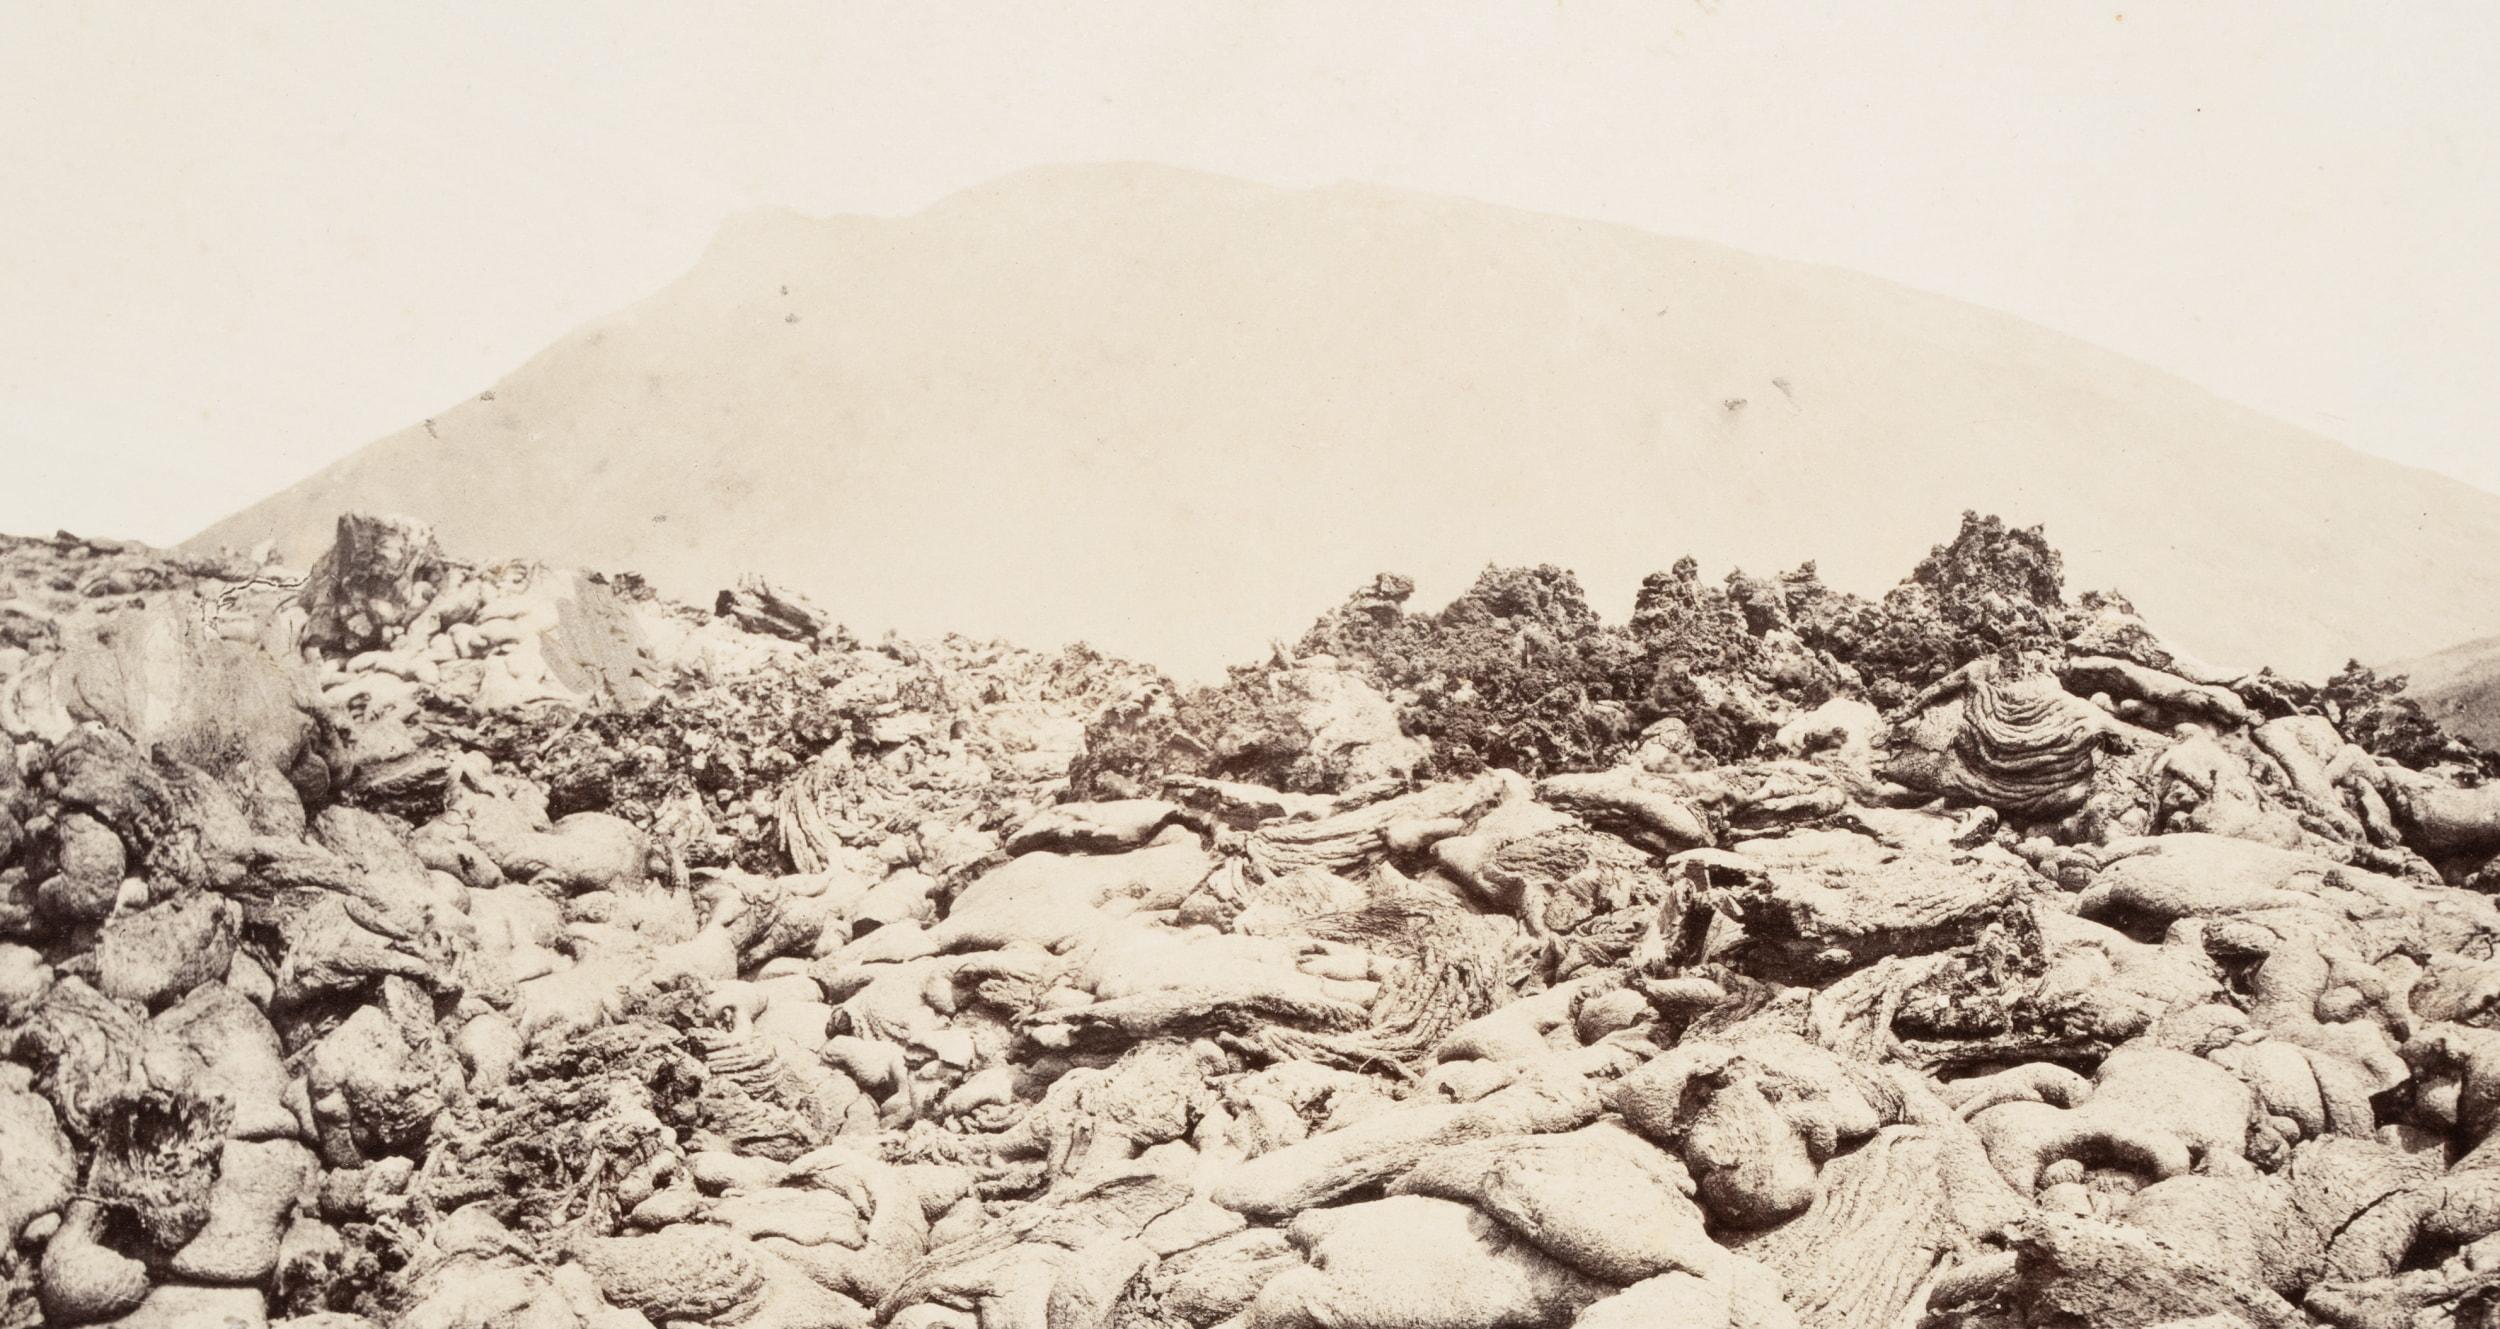 Bergaufsatz mit Lavagestein des Vesuvs – Photograph von Unknown